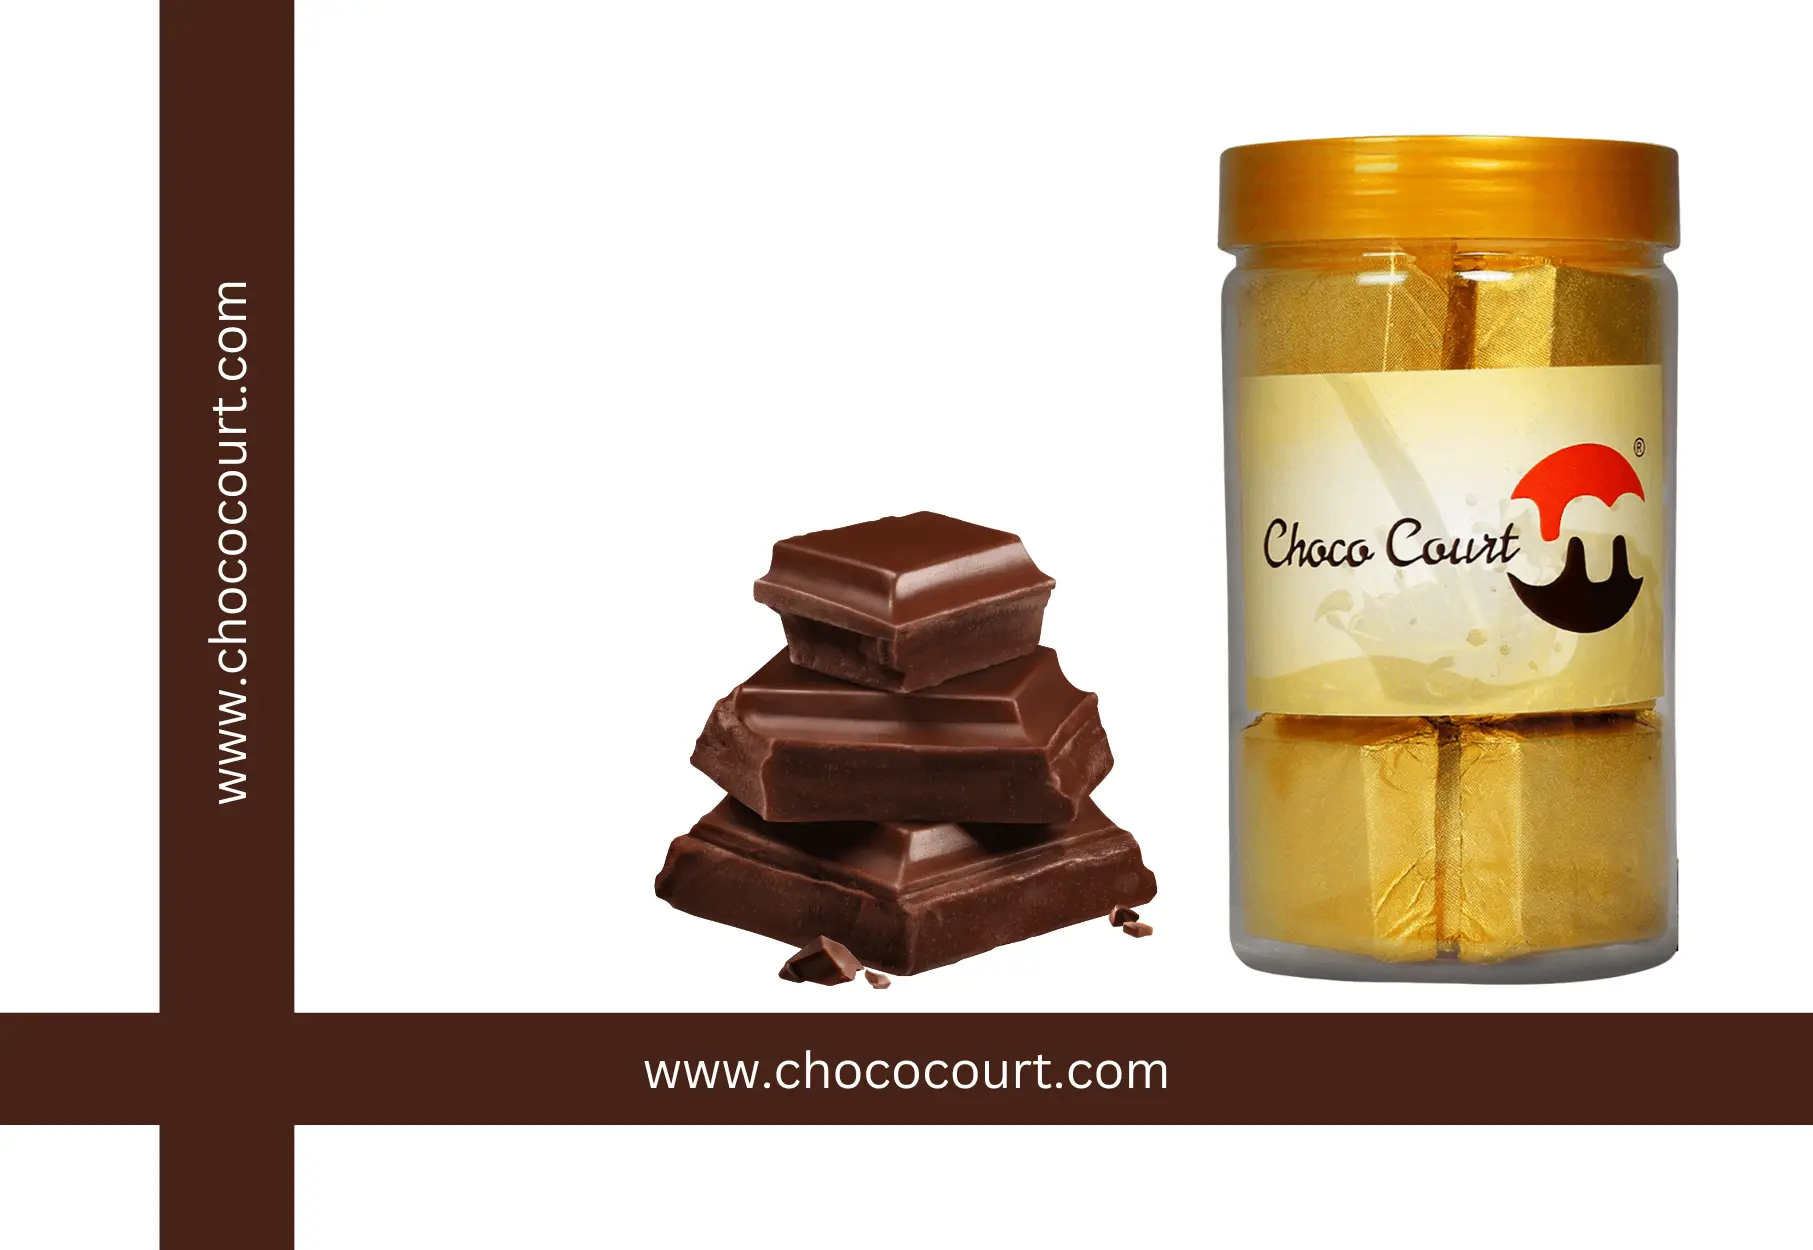 choco court dark chocolate 400gm